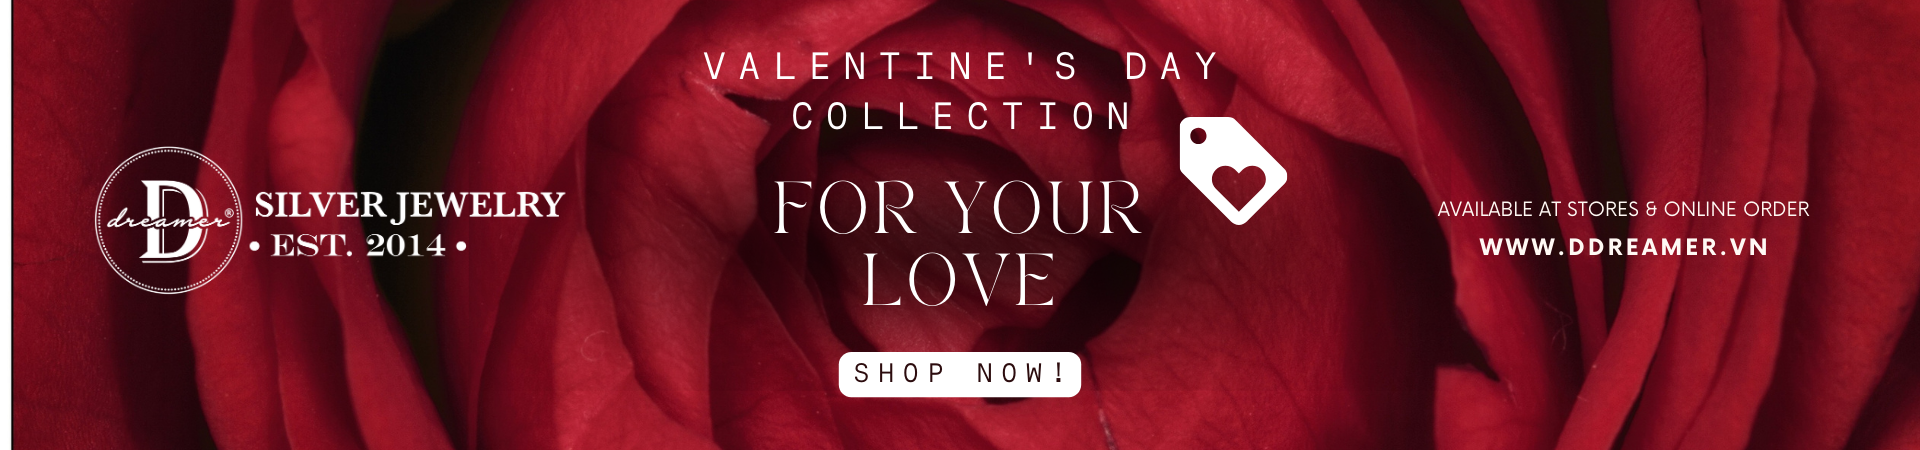 Valentine Jewelry Collection - Trang Sức Quà Tặng Lễ Tình Nhân 14/2